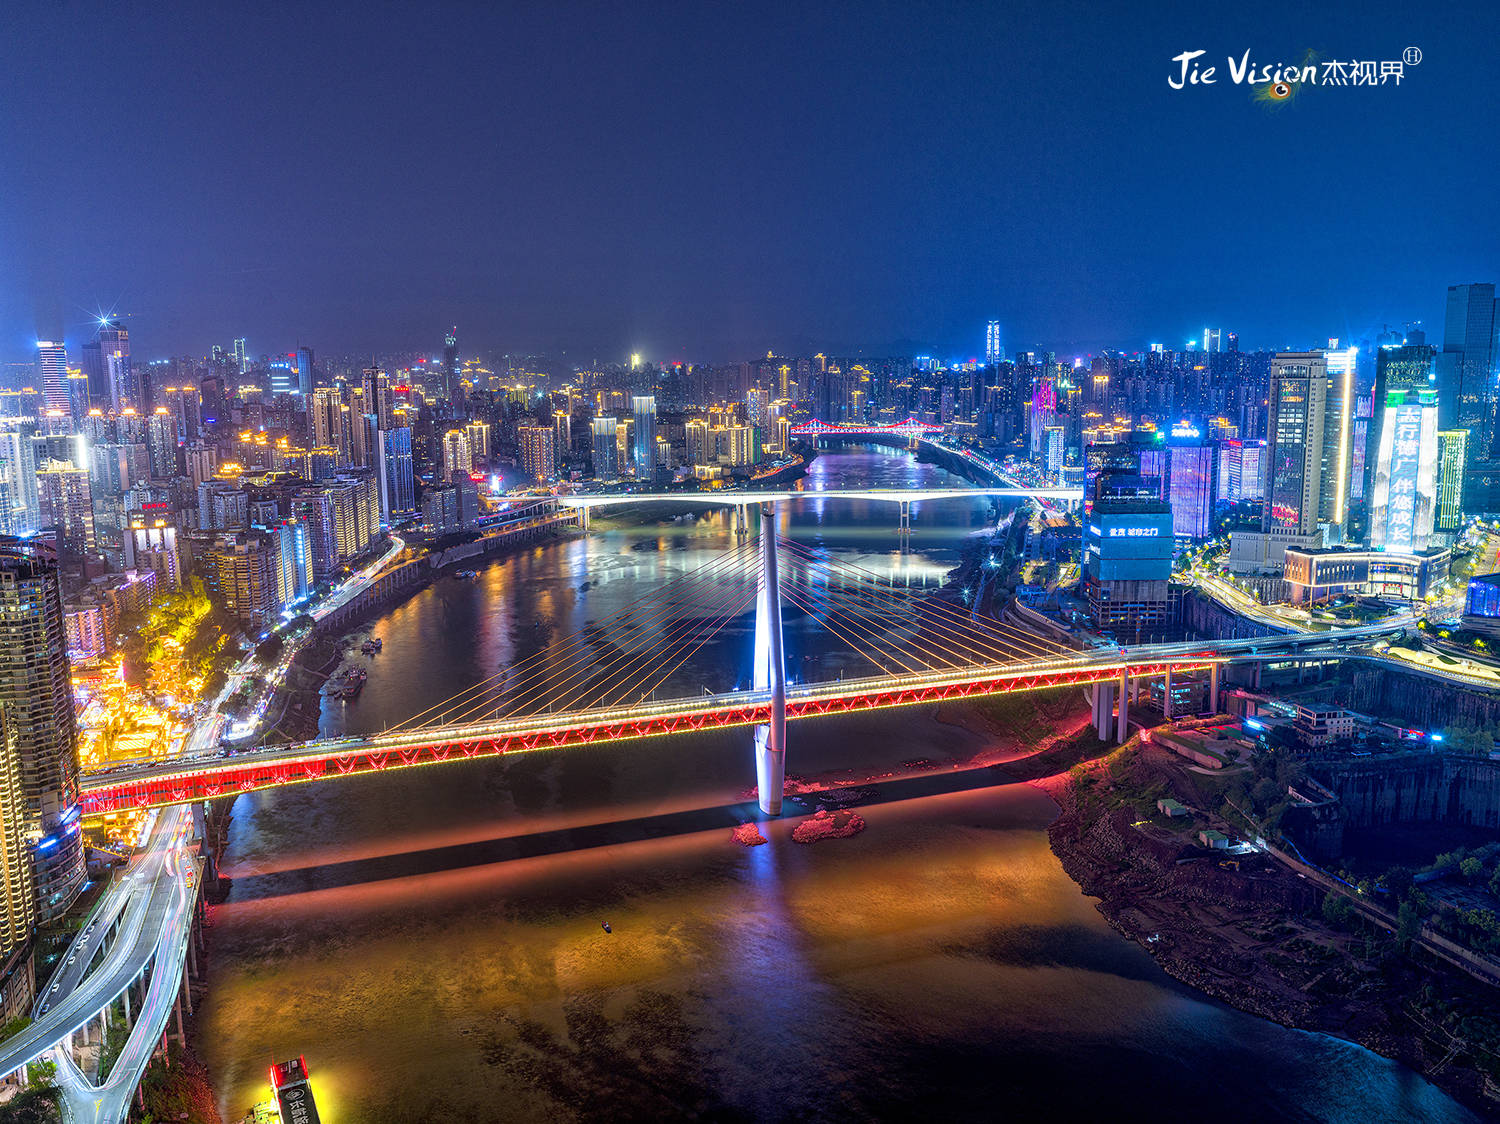 250米俯瞰重庆美景 网红“来福士探索舱” 180元门票您觉得贵吗？